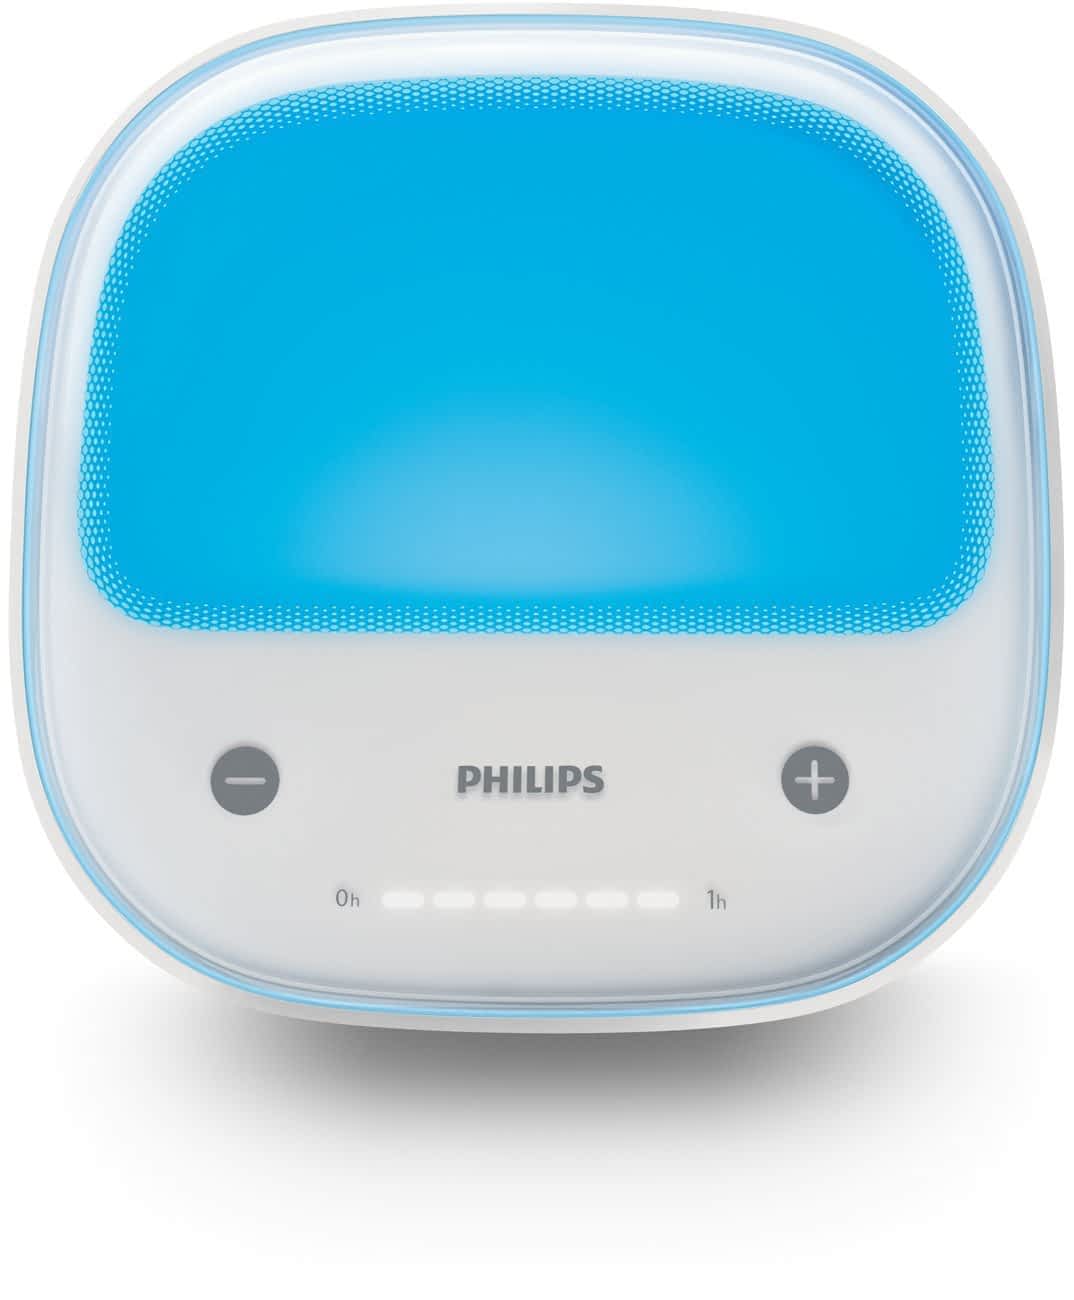 Philips goLITE BLU â Convenient, Effective Blue Light Therapy â Surf ...